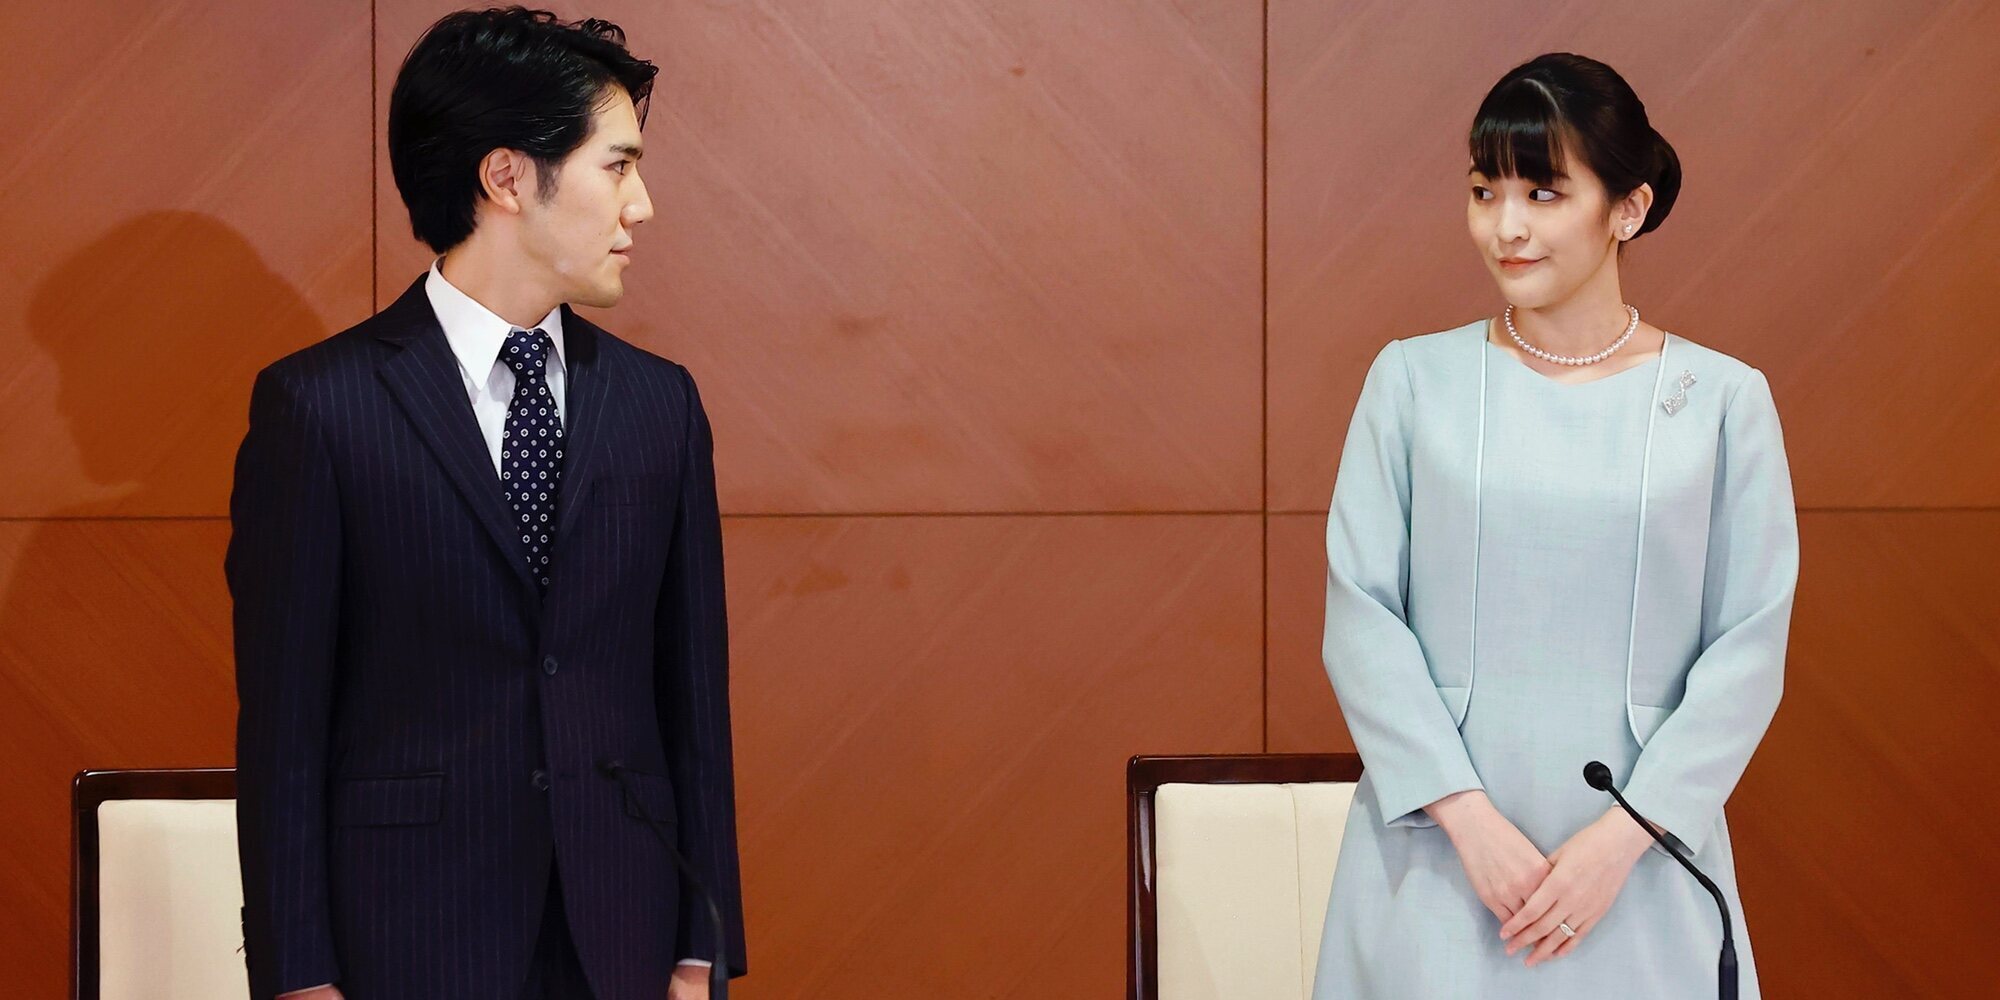 La mutua declaración de amor de Mako de Japón y Kei Komuro tras su boda